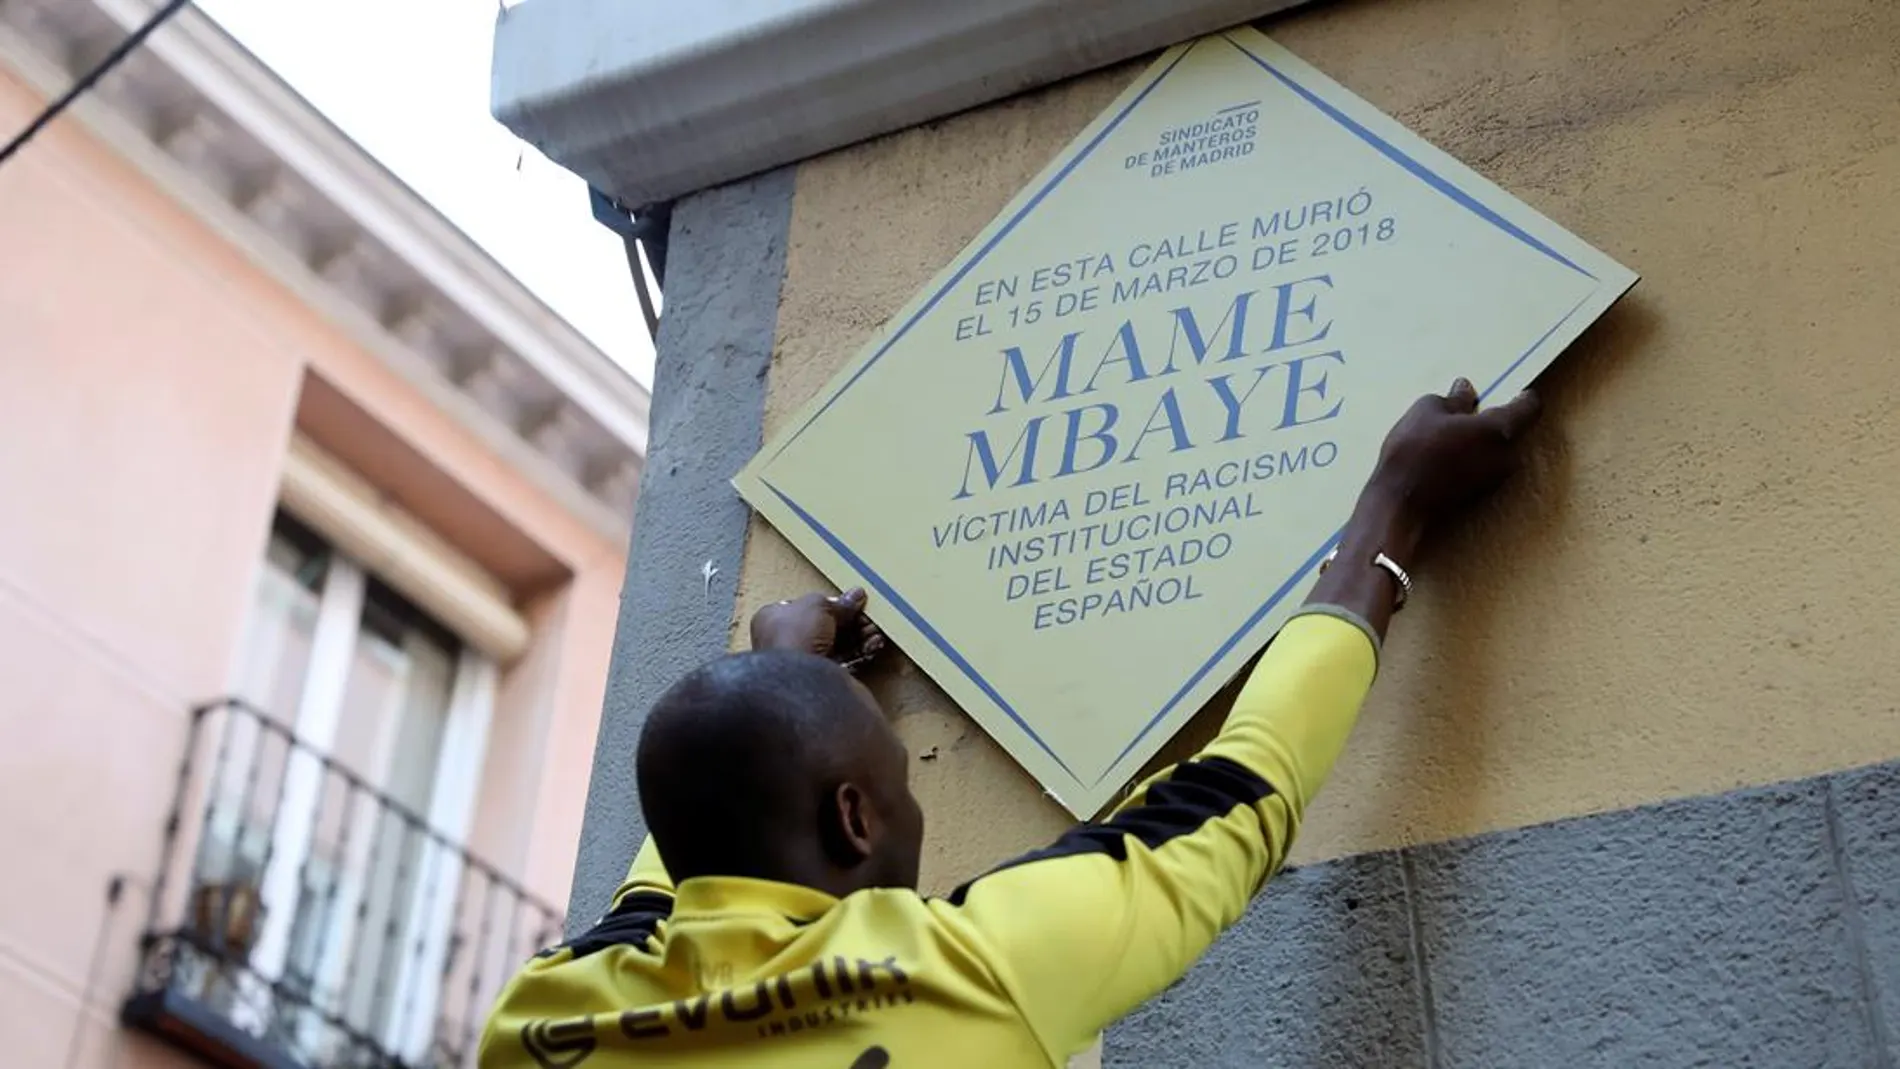 Placa en recuerdo de Mame Mbaye